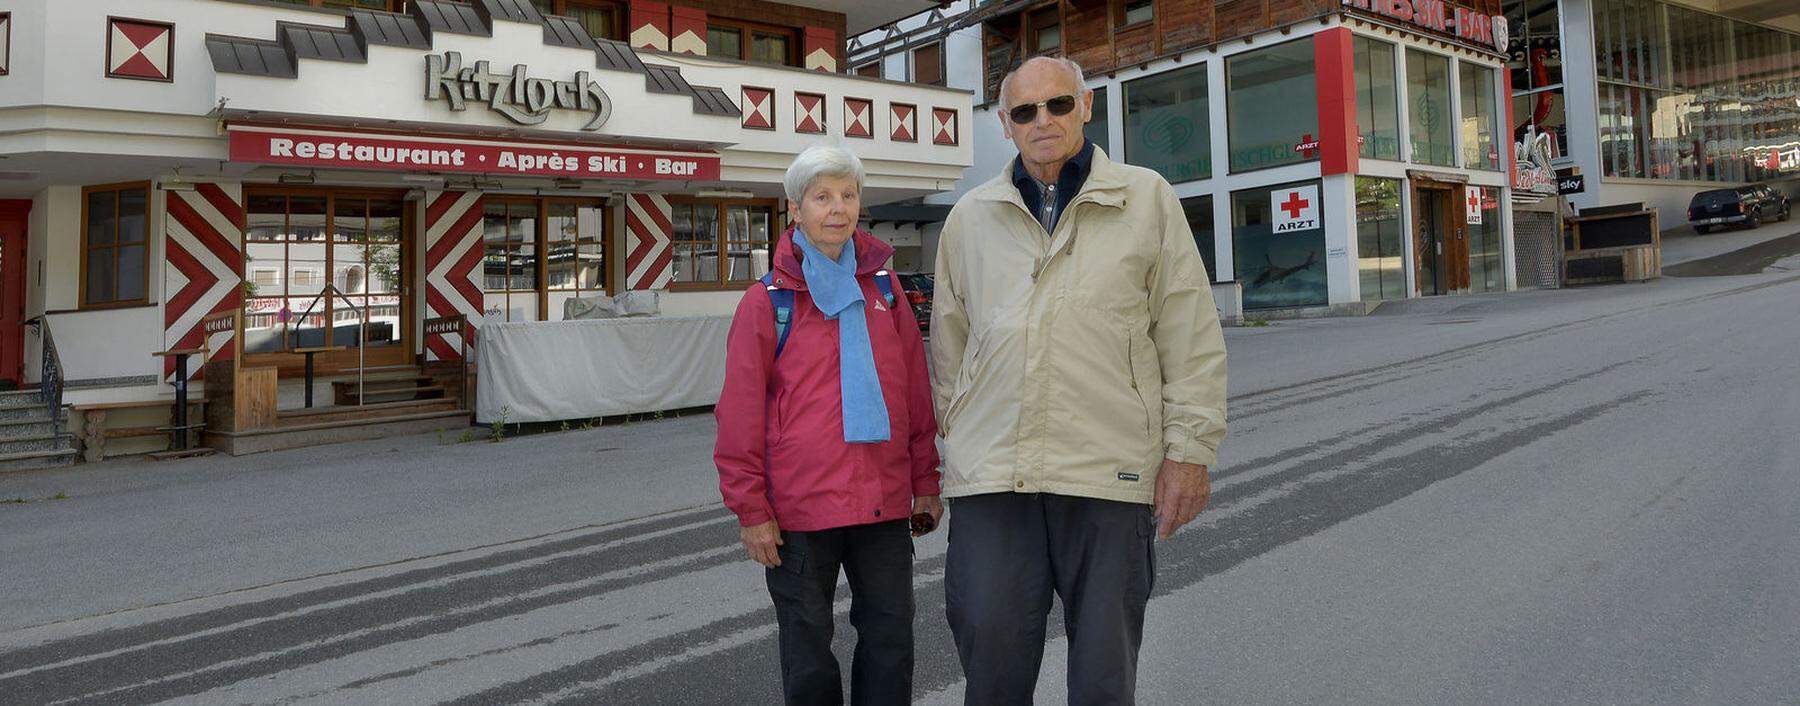 Uta und Helmut Gärtner aus Berlin haben keine Angst vor Corona. Ins Kitzloch würden sie aber nicht gehen: „Für so etwas sind wir zu alt.“